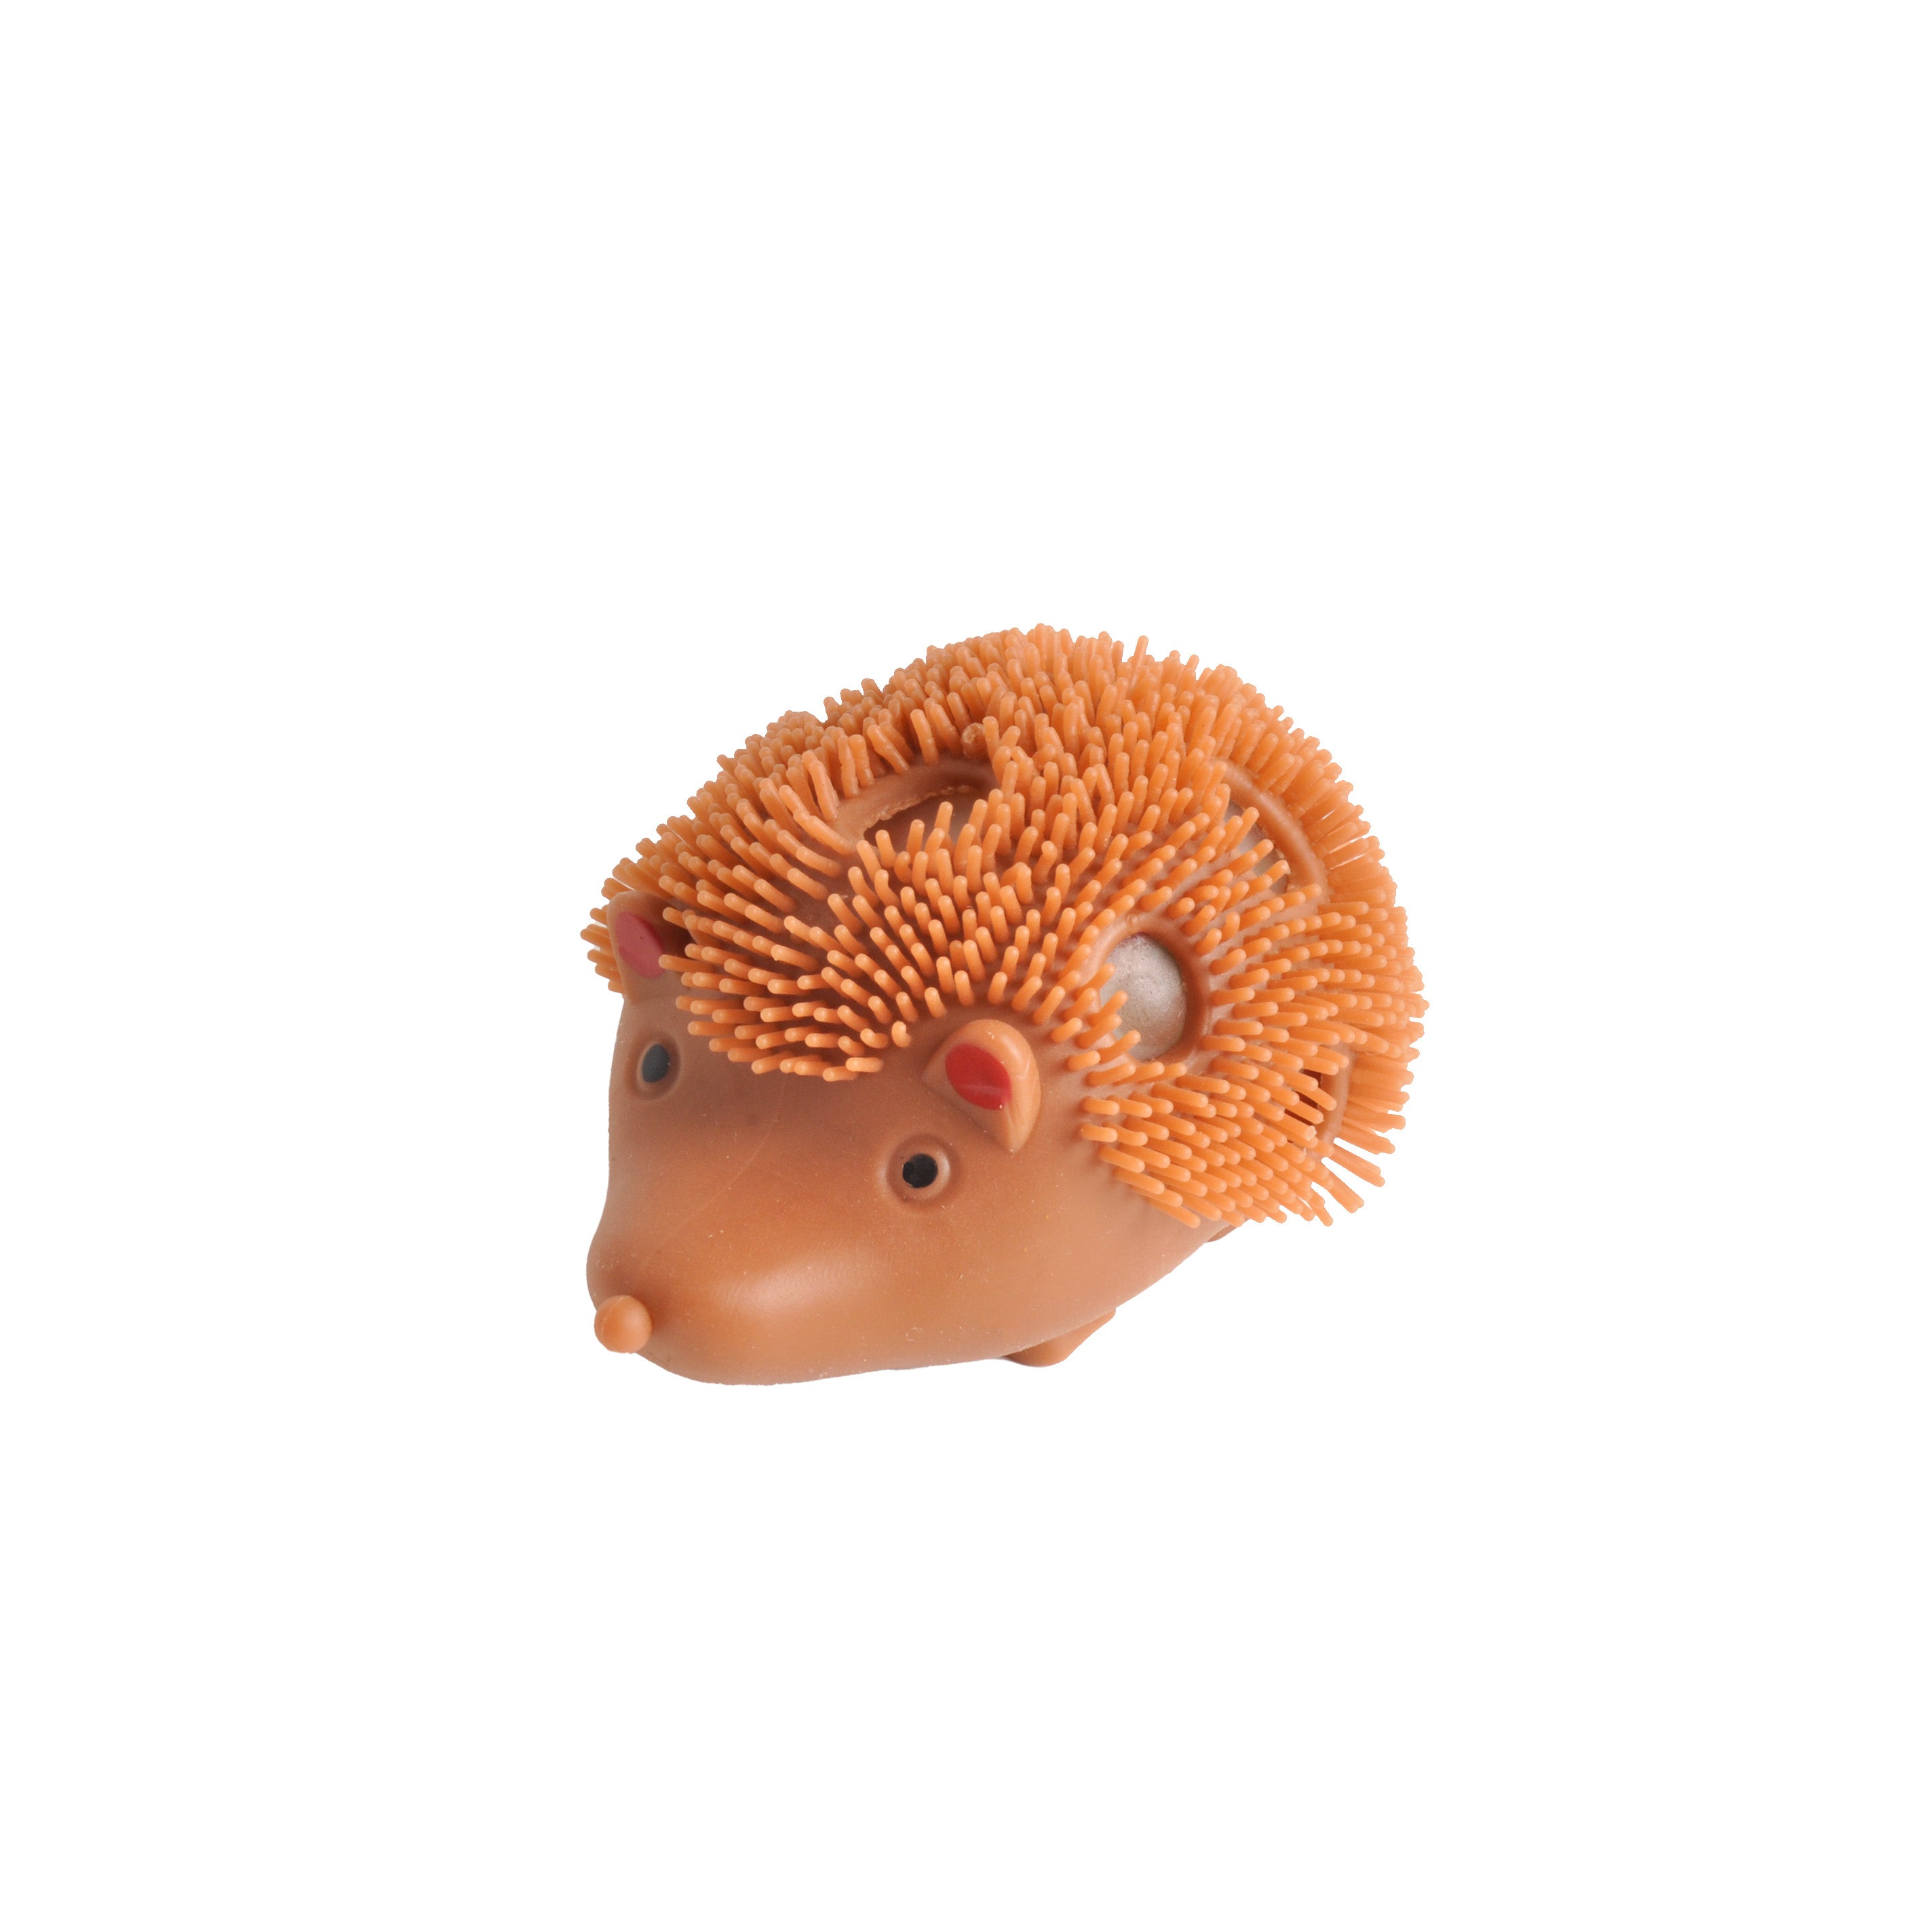 Squishy Hedgehog - Brown